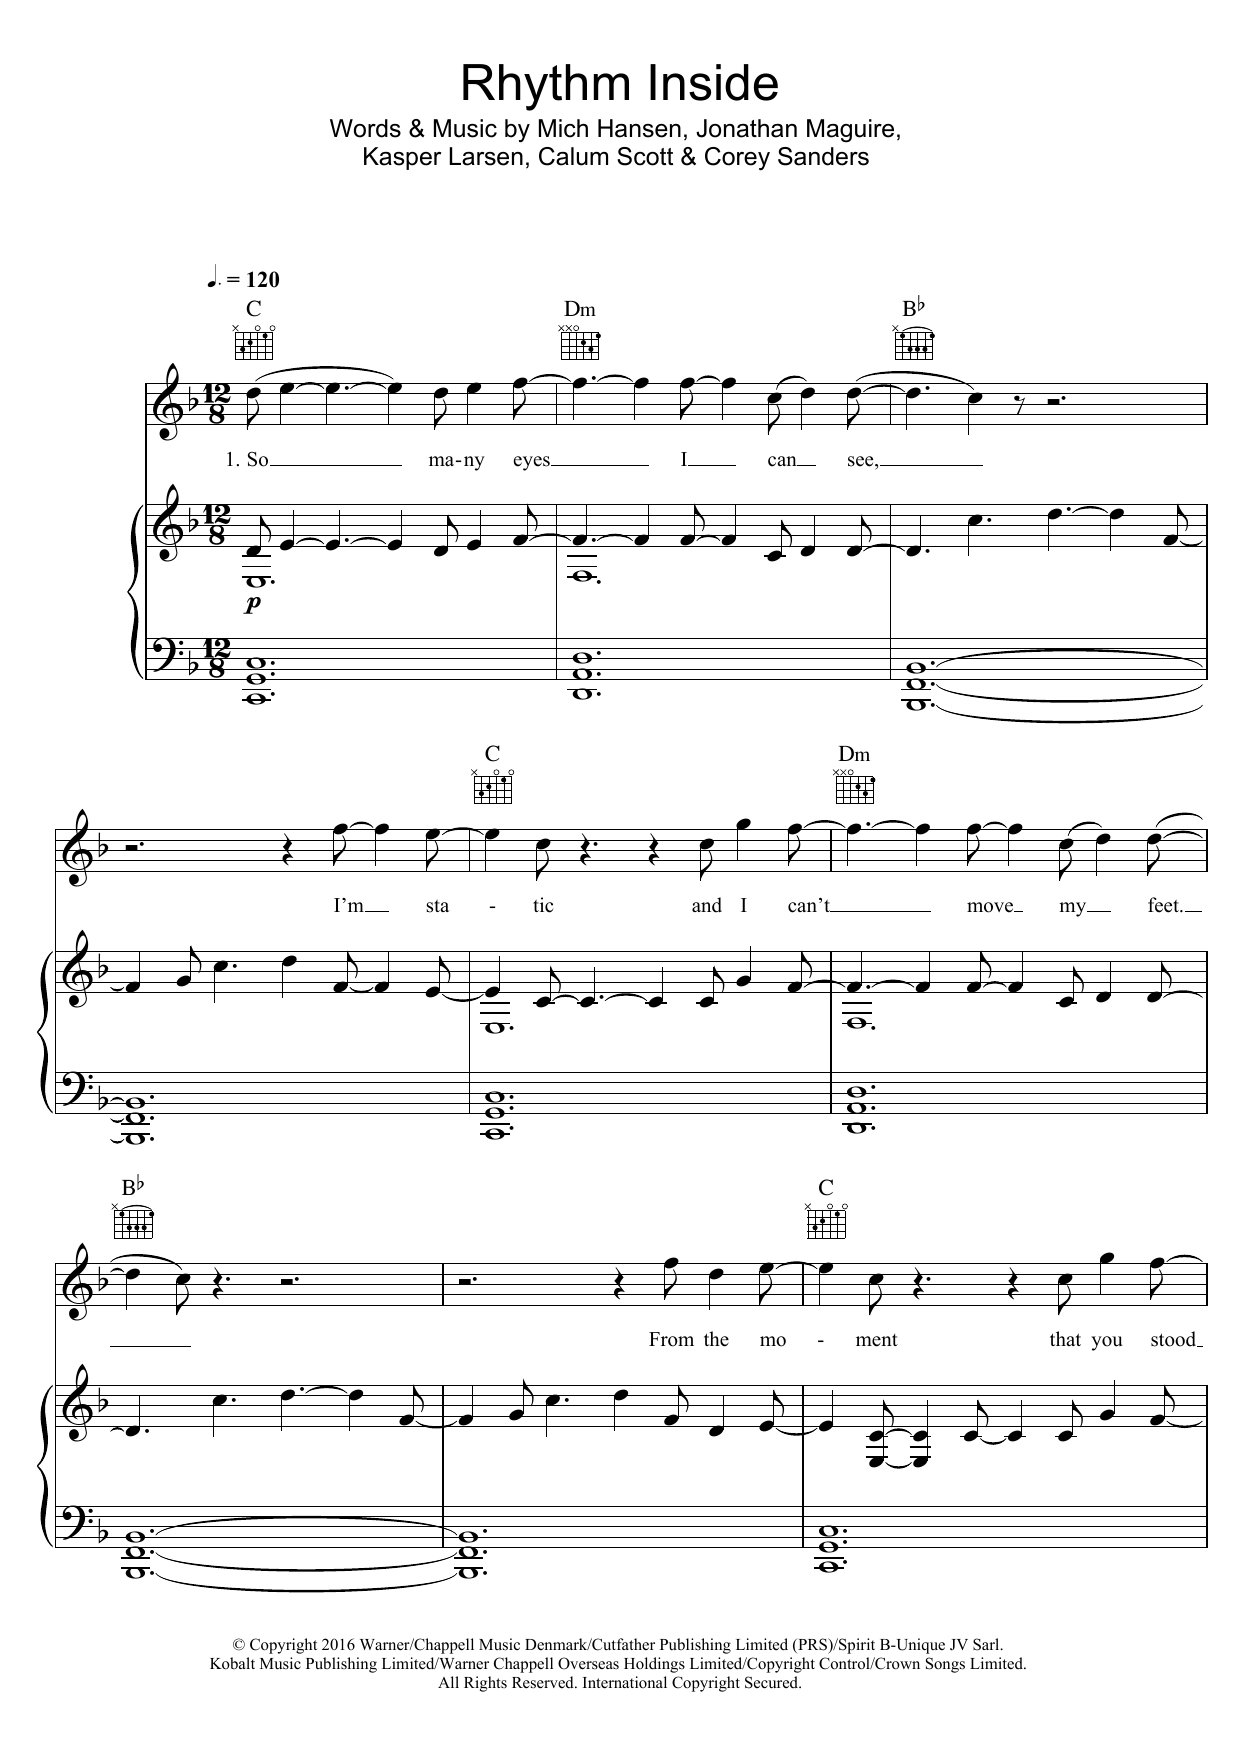 Calum Scott Rhythm Inside sheet music notes and chords arranged for Piano, Vocal & Guitar Chords